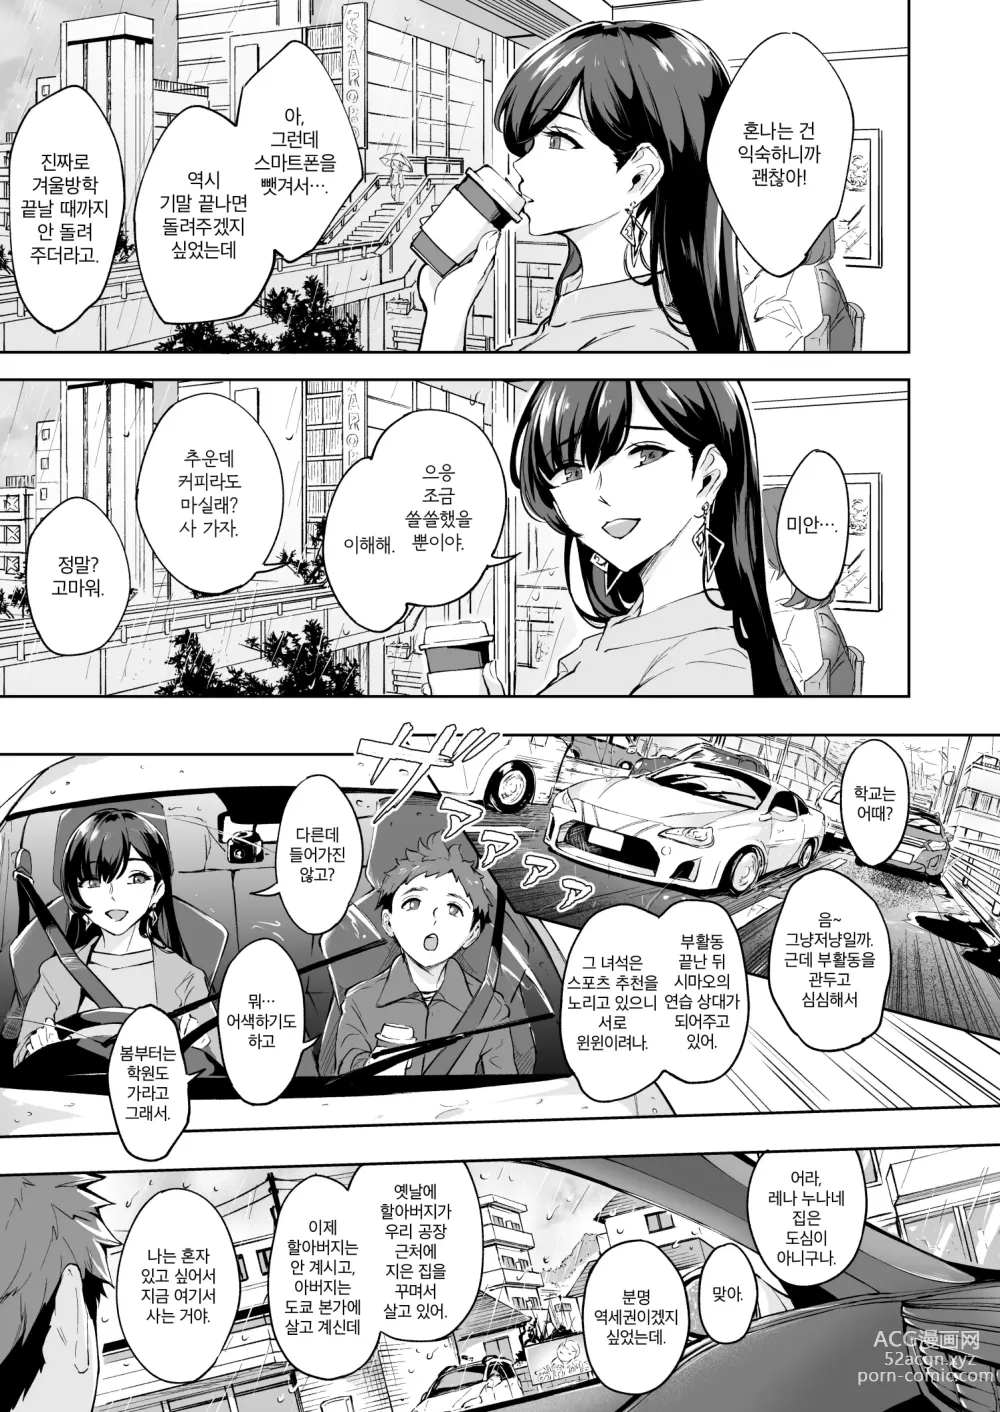 Page 4 of doujinshi 나타난 치녀는 연하킬러인 스카토로 변태였습니다 3